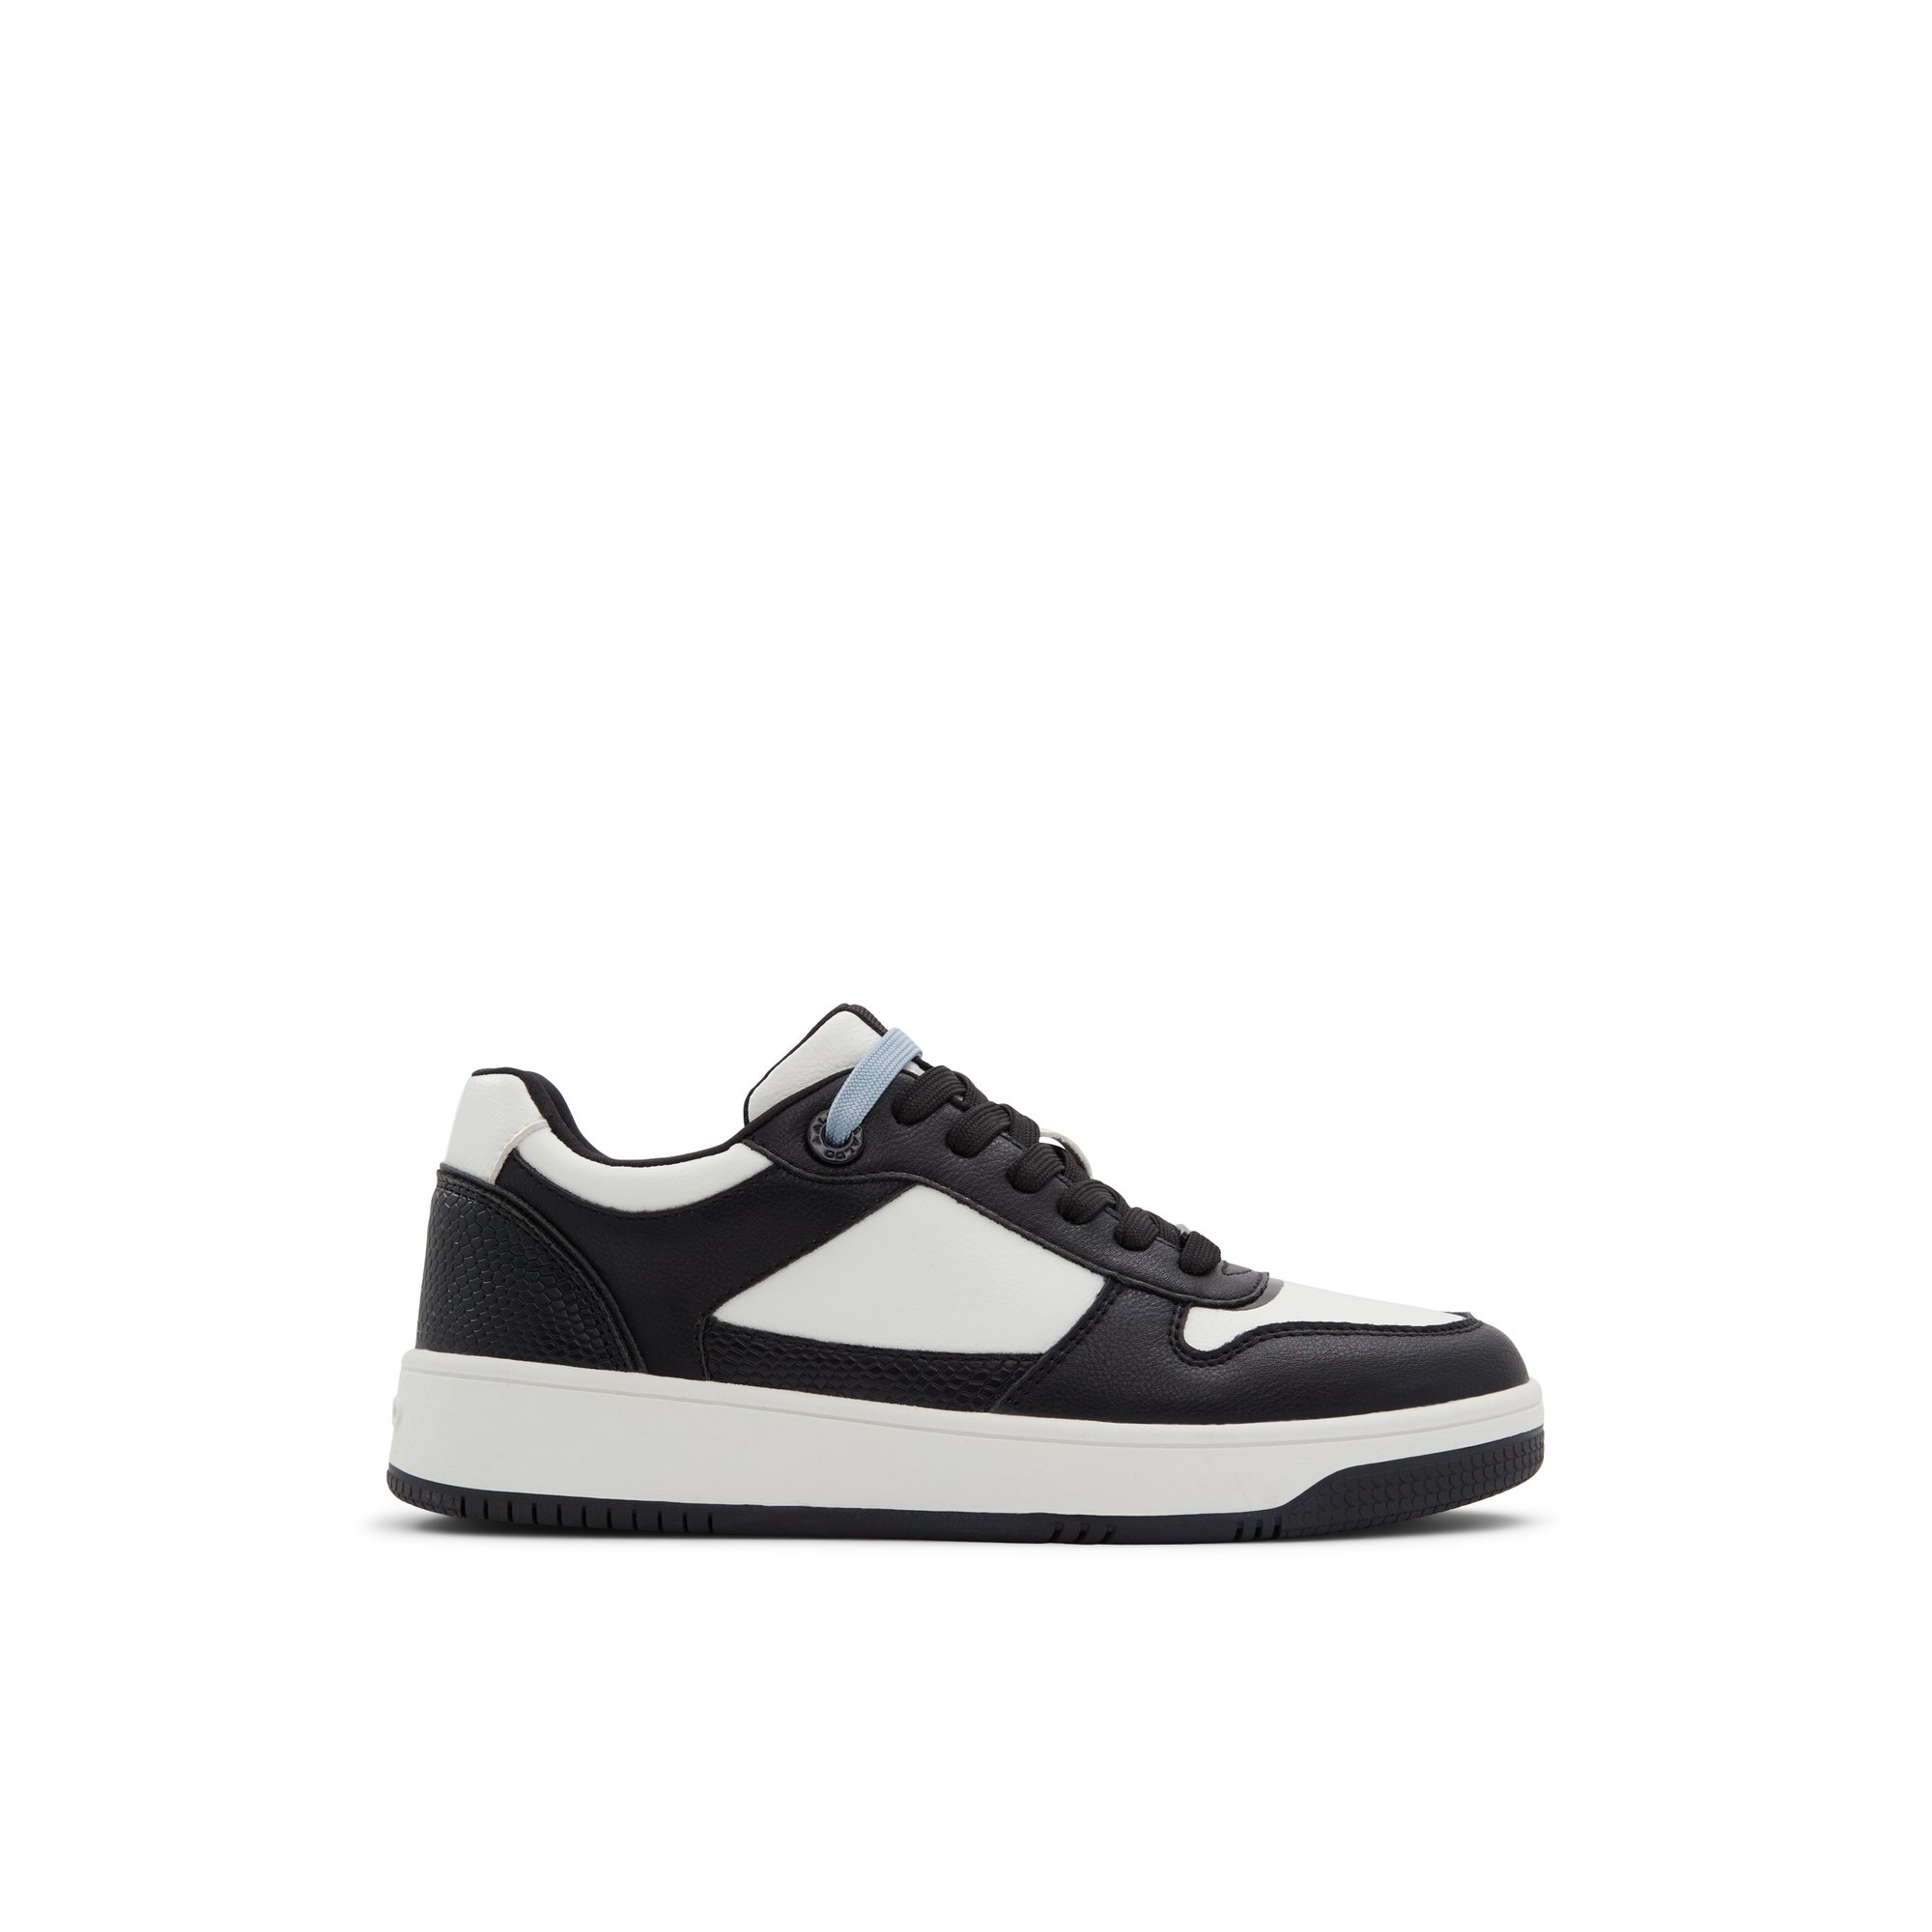 ALDO Retroact - Women's Low Top Sneaker Sneakers - White